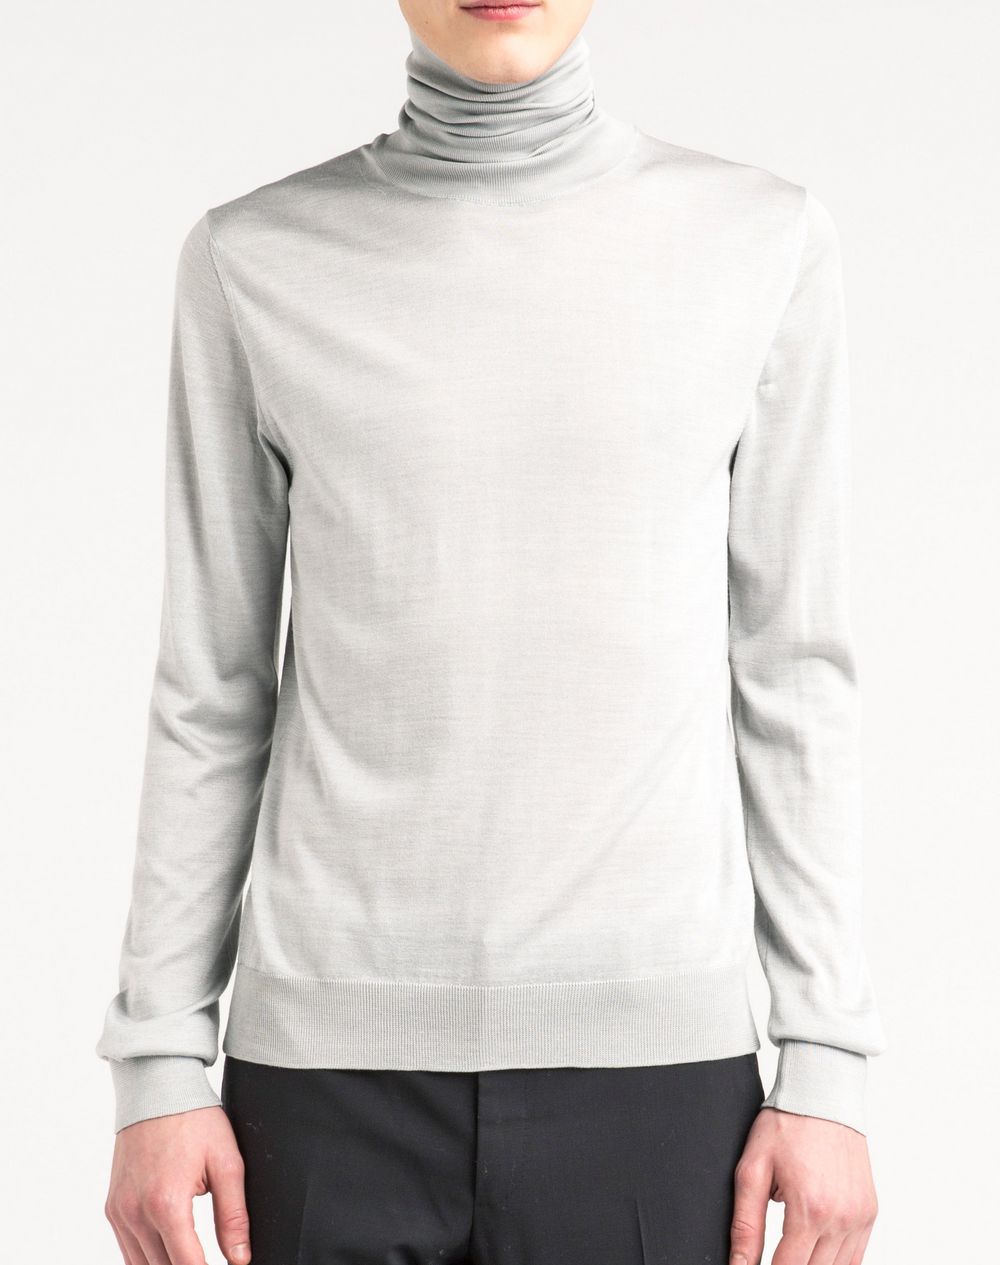 Lanvin Silk Mesh Sweater, Knitwear & Sweaters Men | Lanvin Online Store